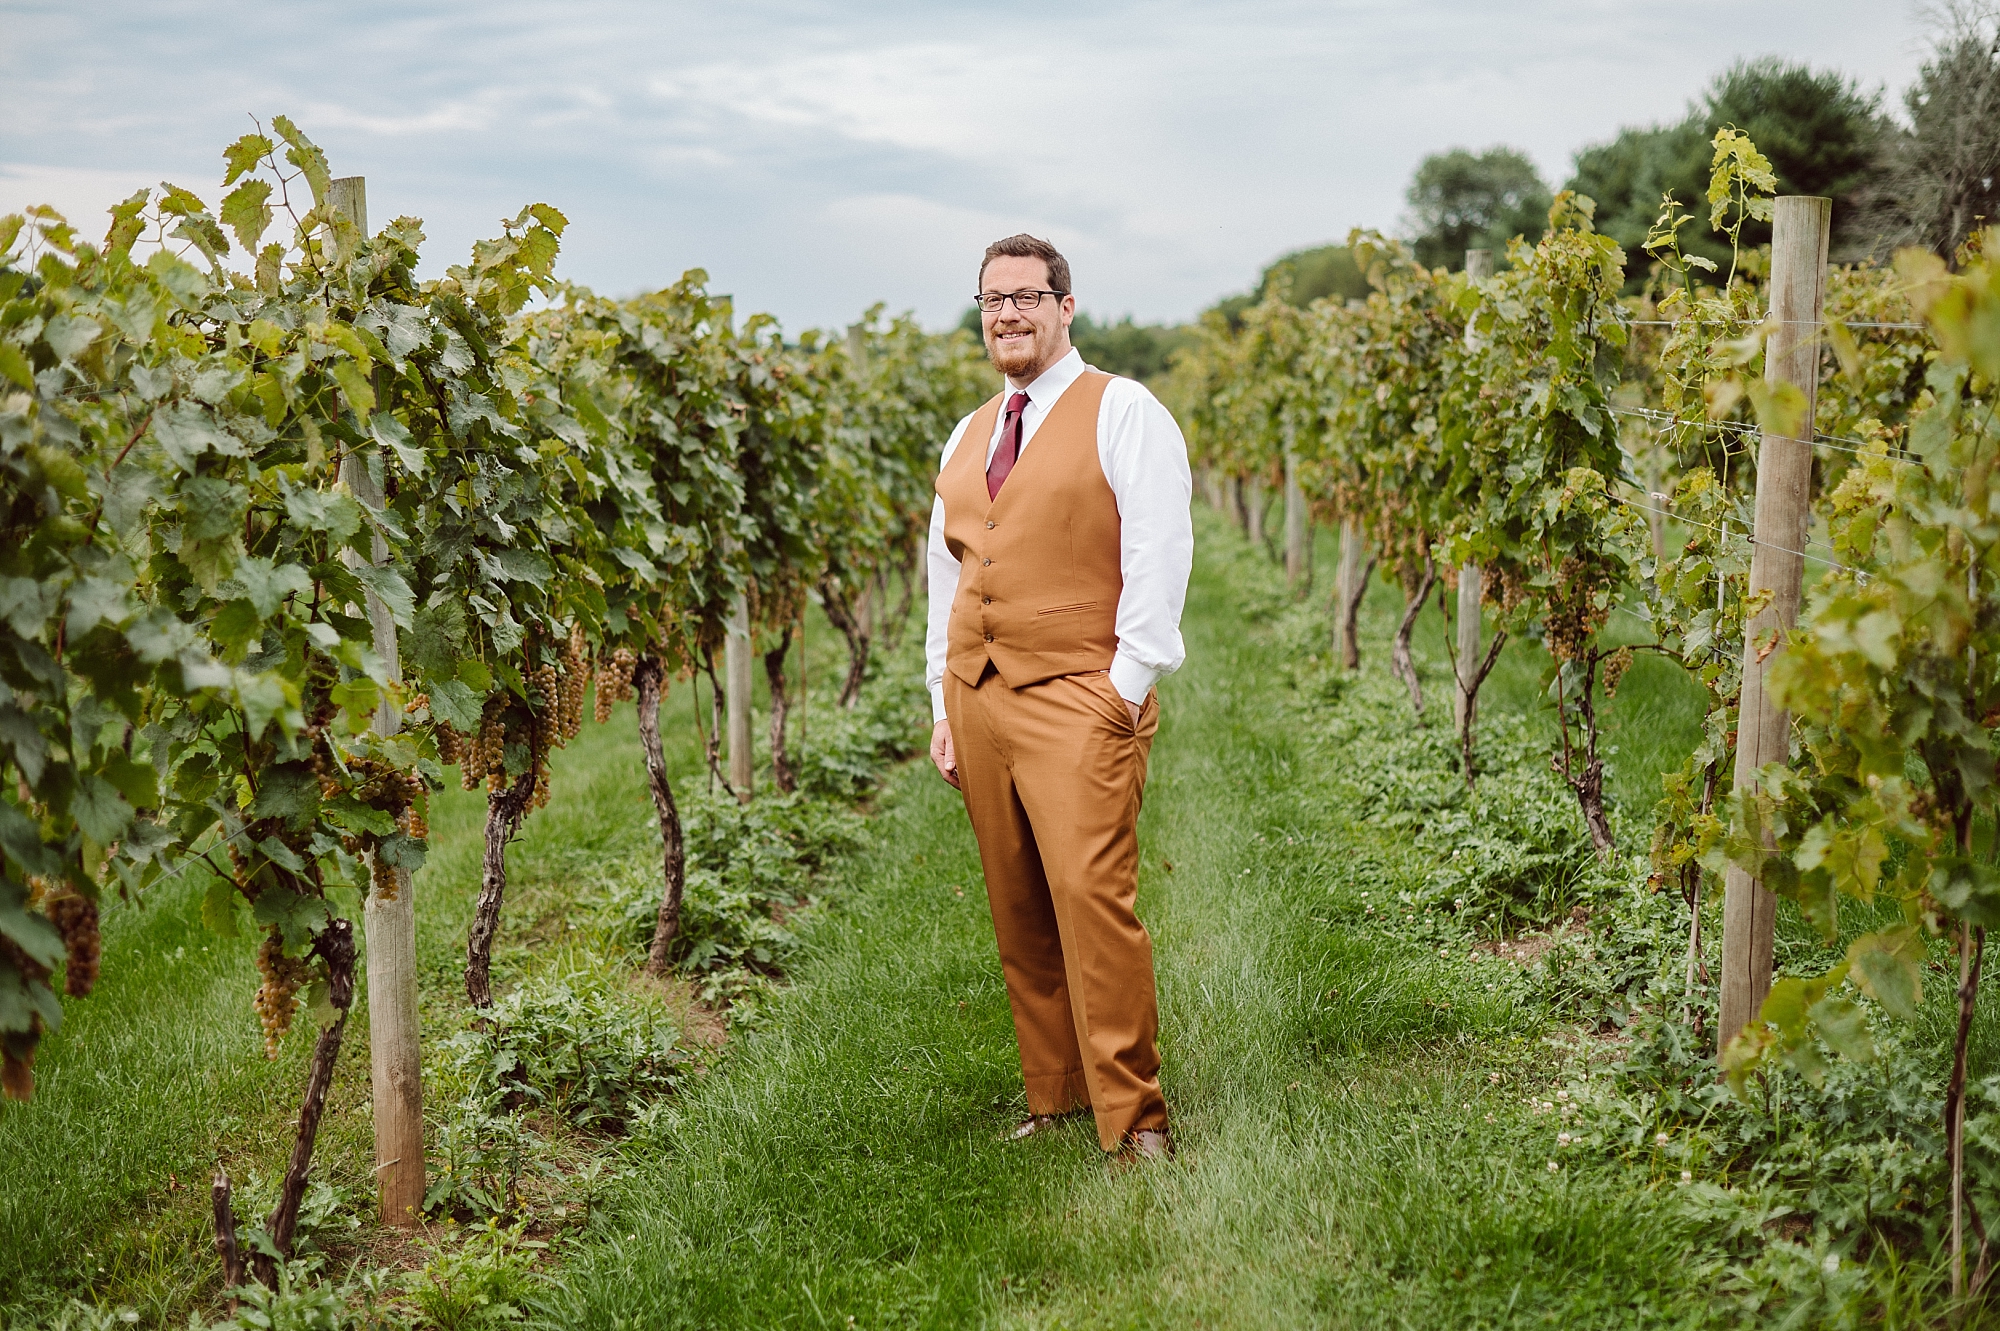 groom poses in vineyard grapes 